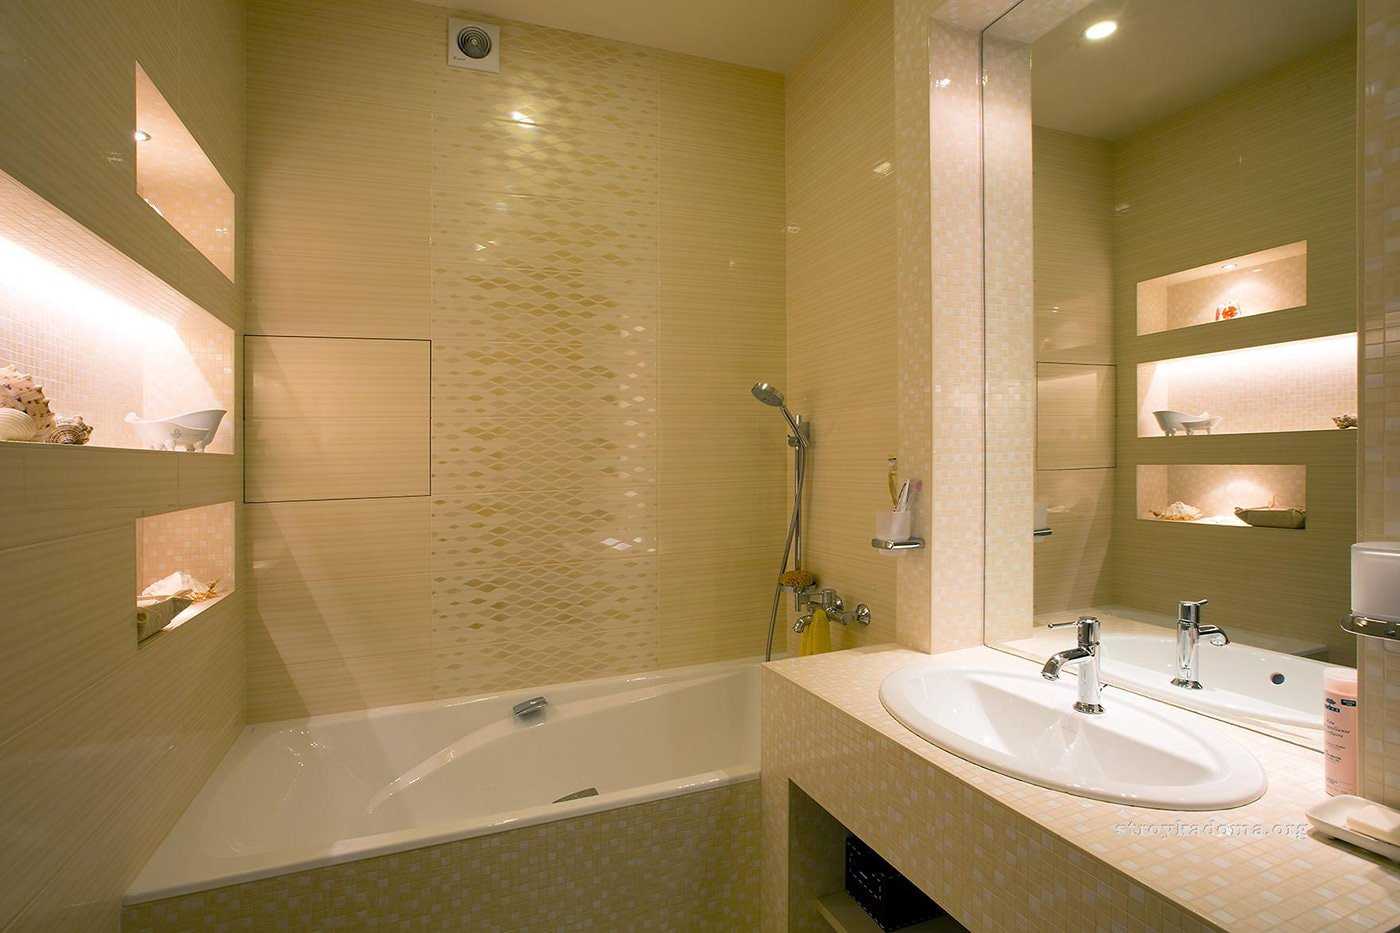 Плитка для маленькой ванной комнаты — самая красивая кладка в интерьере! (80 фото)